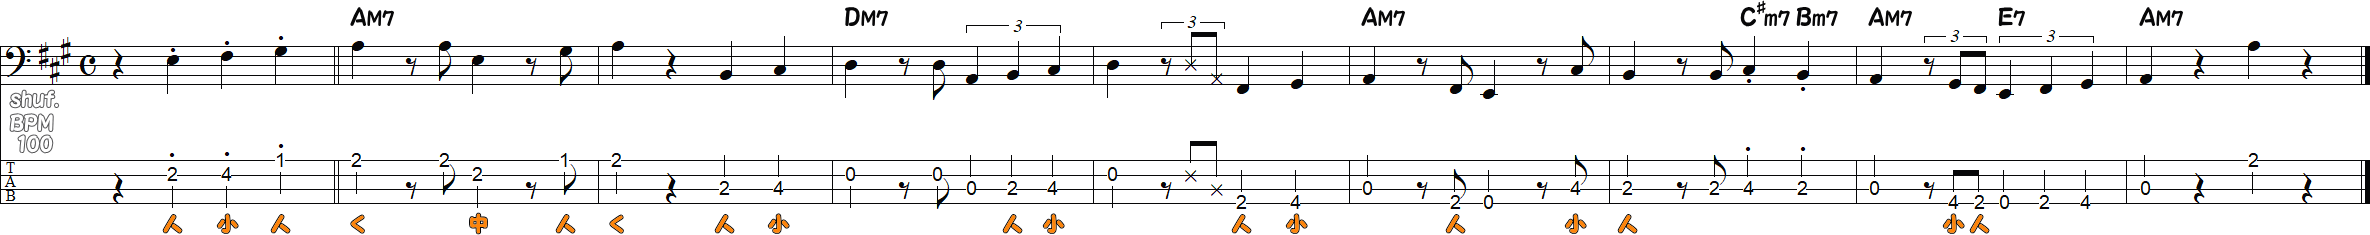 2拍3連符のベースライン9小節